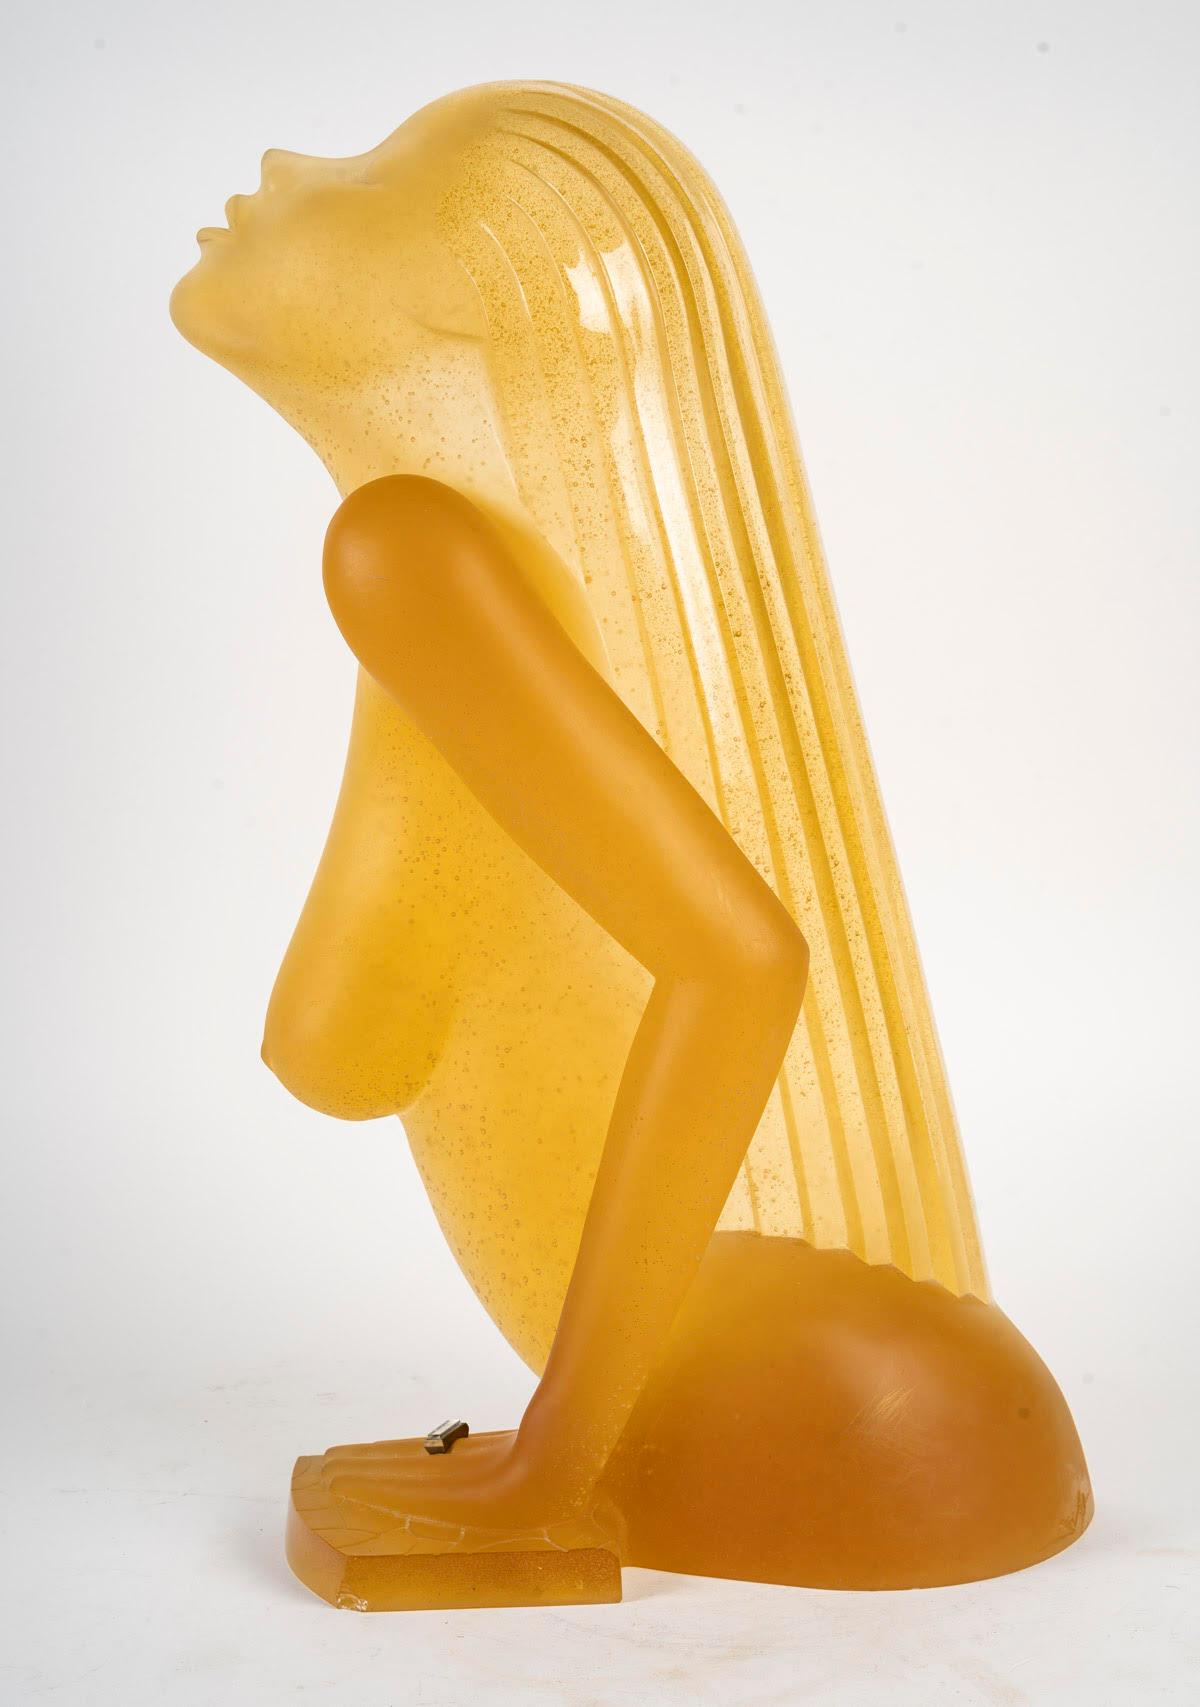 Daum-Skulptur des amerikanischen Künstlers Dan Dailey, XX. Jahrhundert.

Skulptur in pâte de cristal von Daum Frankreich durch den amerikanischen Künstler Dan Dailey, XX. Jahrhundert, ( kleiner Mangel auf dem hinteren Teil ).
h: 62cm, B: 34cm, T: